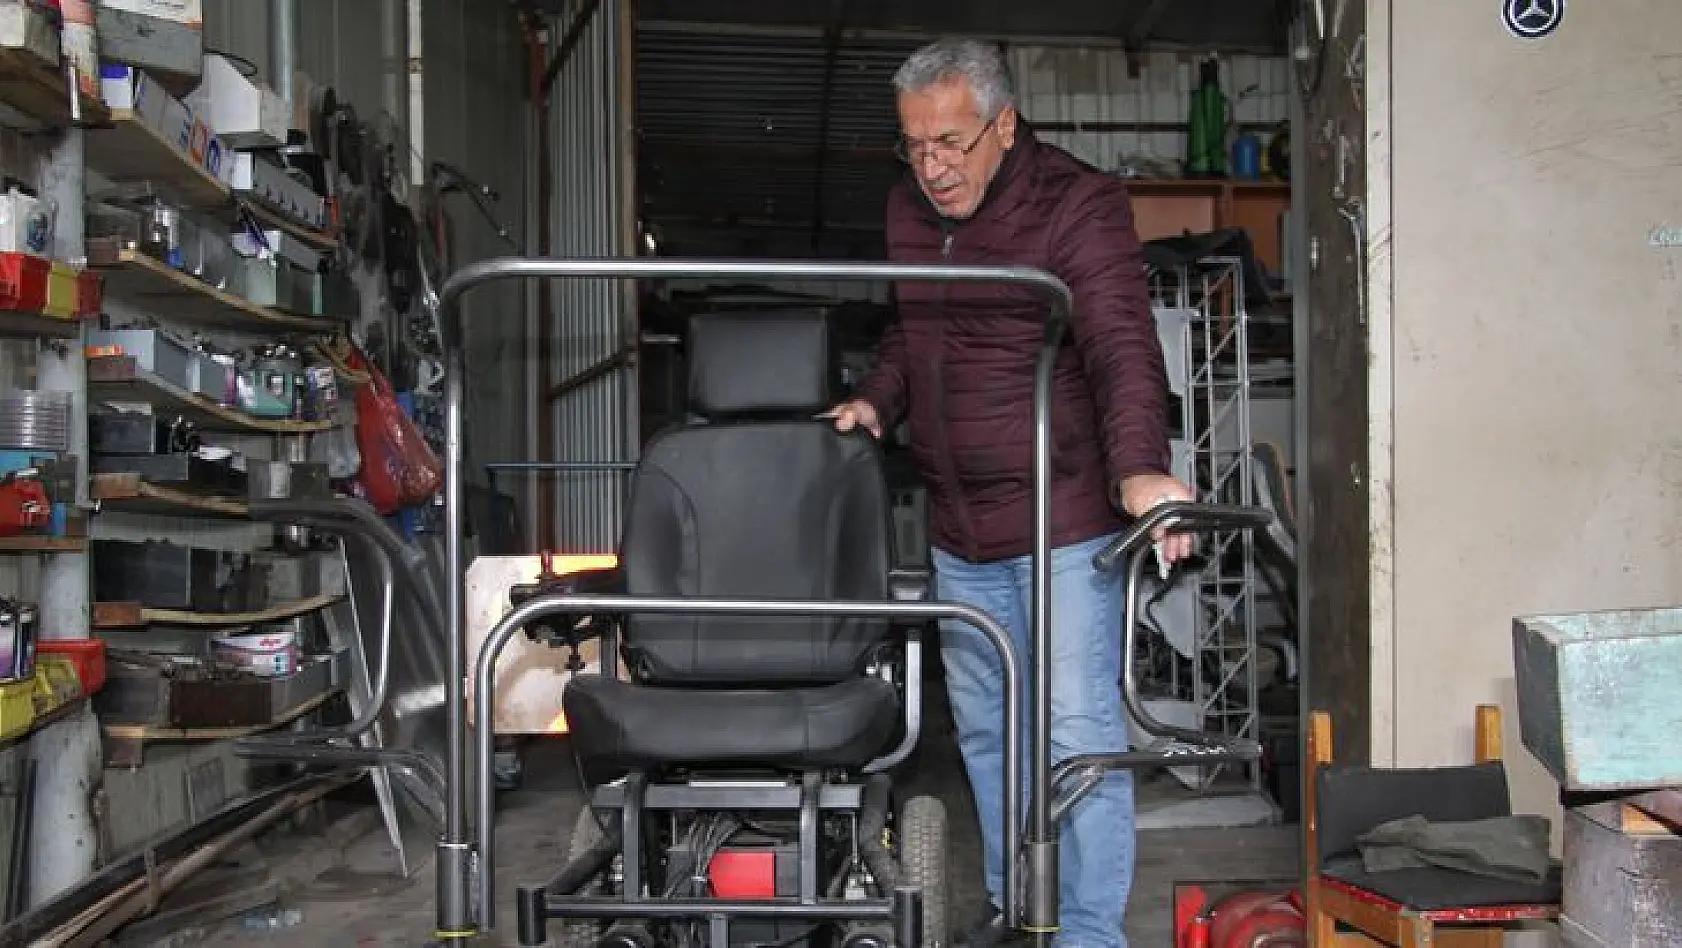 Engelli Babası Yaptığı Tasarımlarla Engellilerin Hayatlarını Kolaylaştırdı